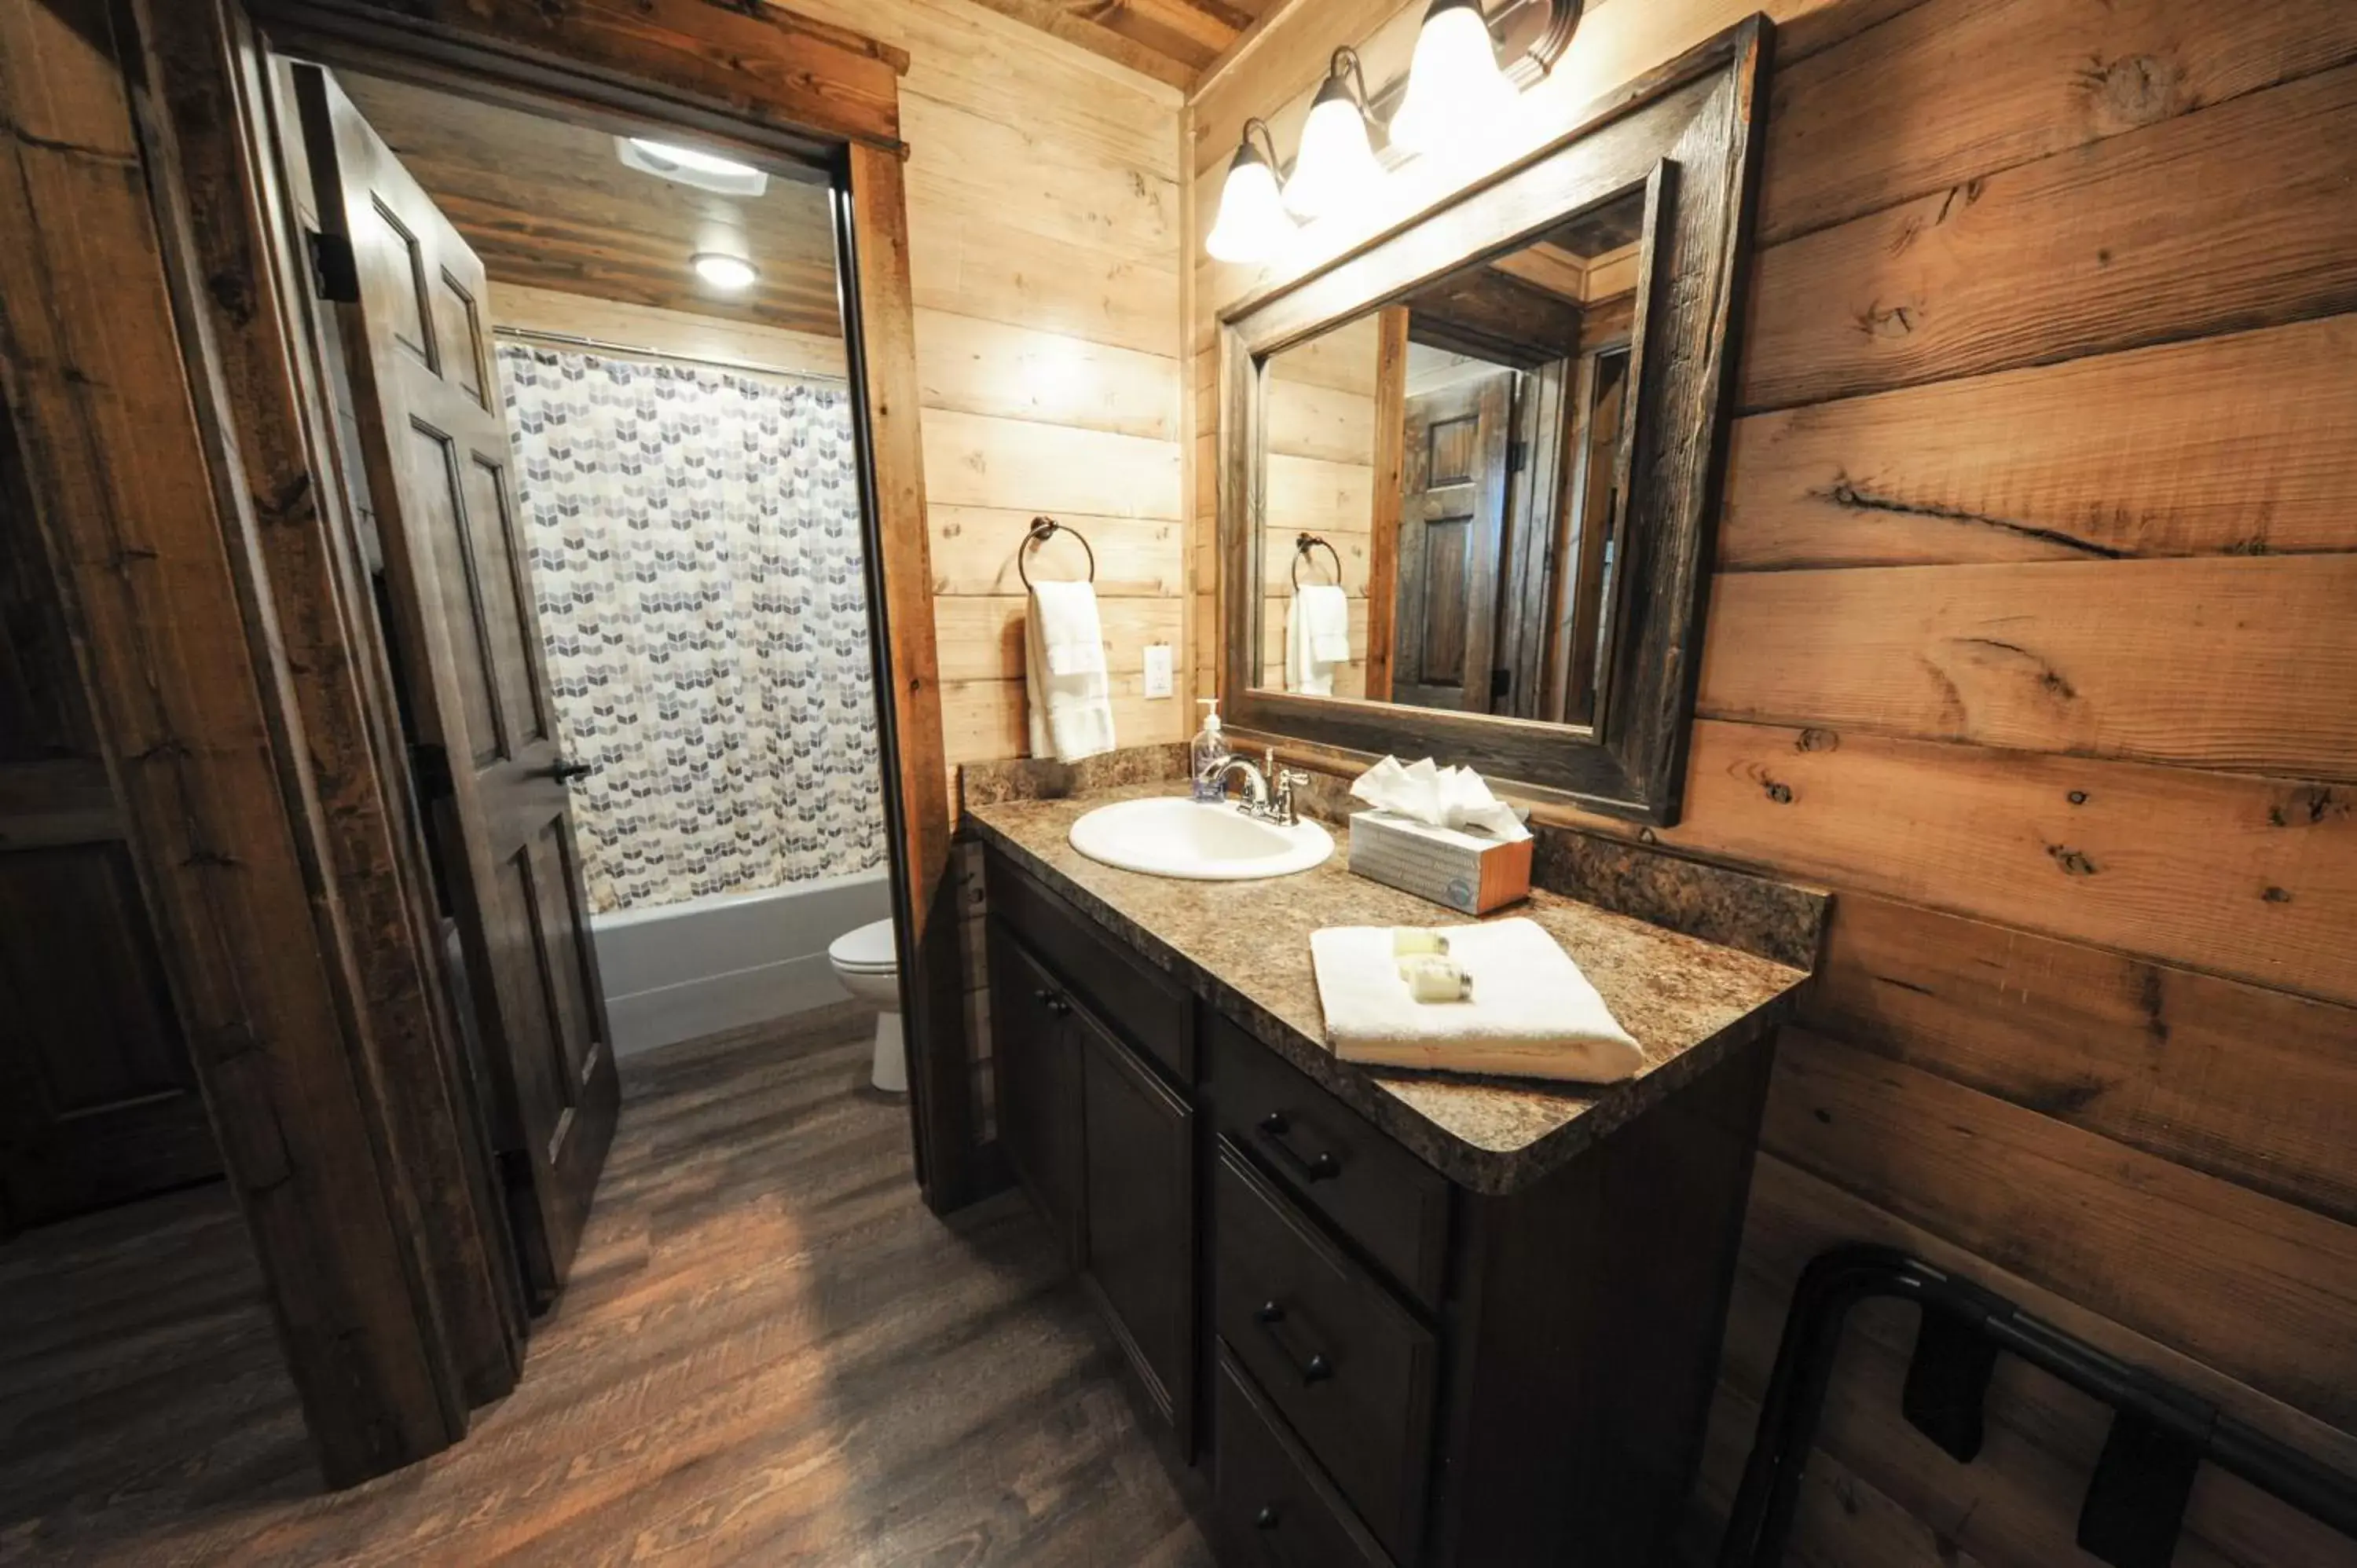 Bathroom in Teton Valley Resort